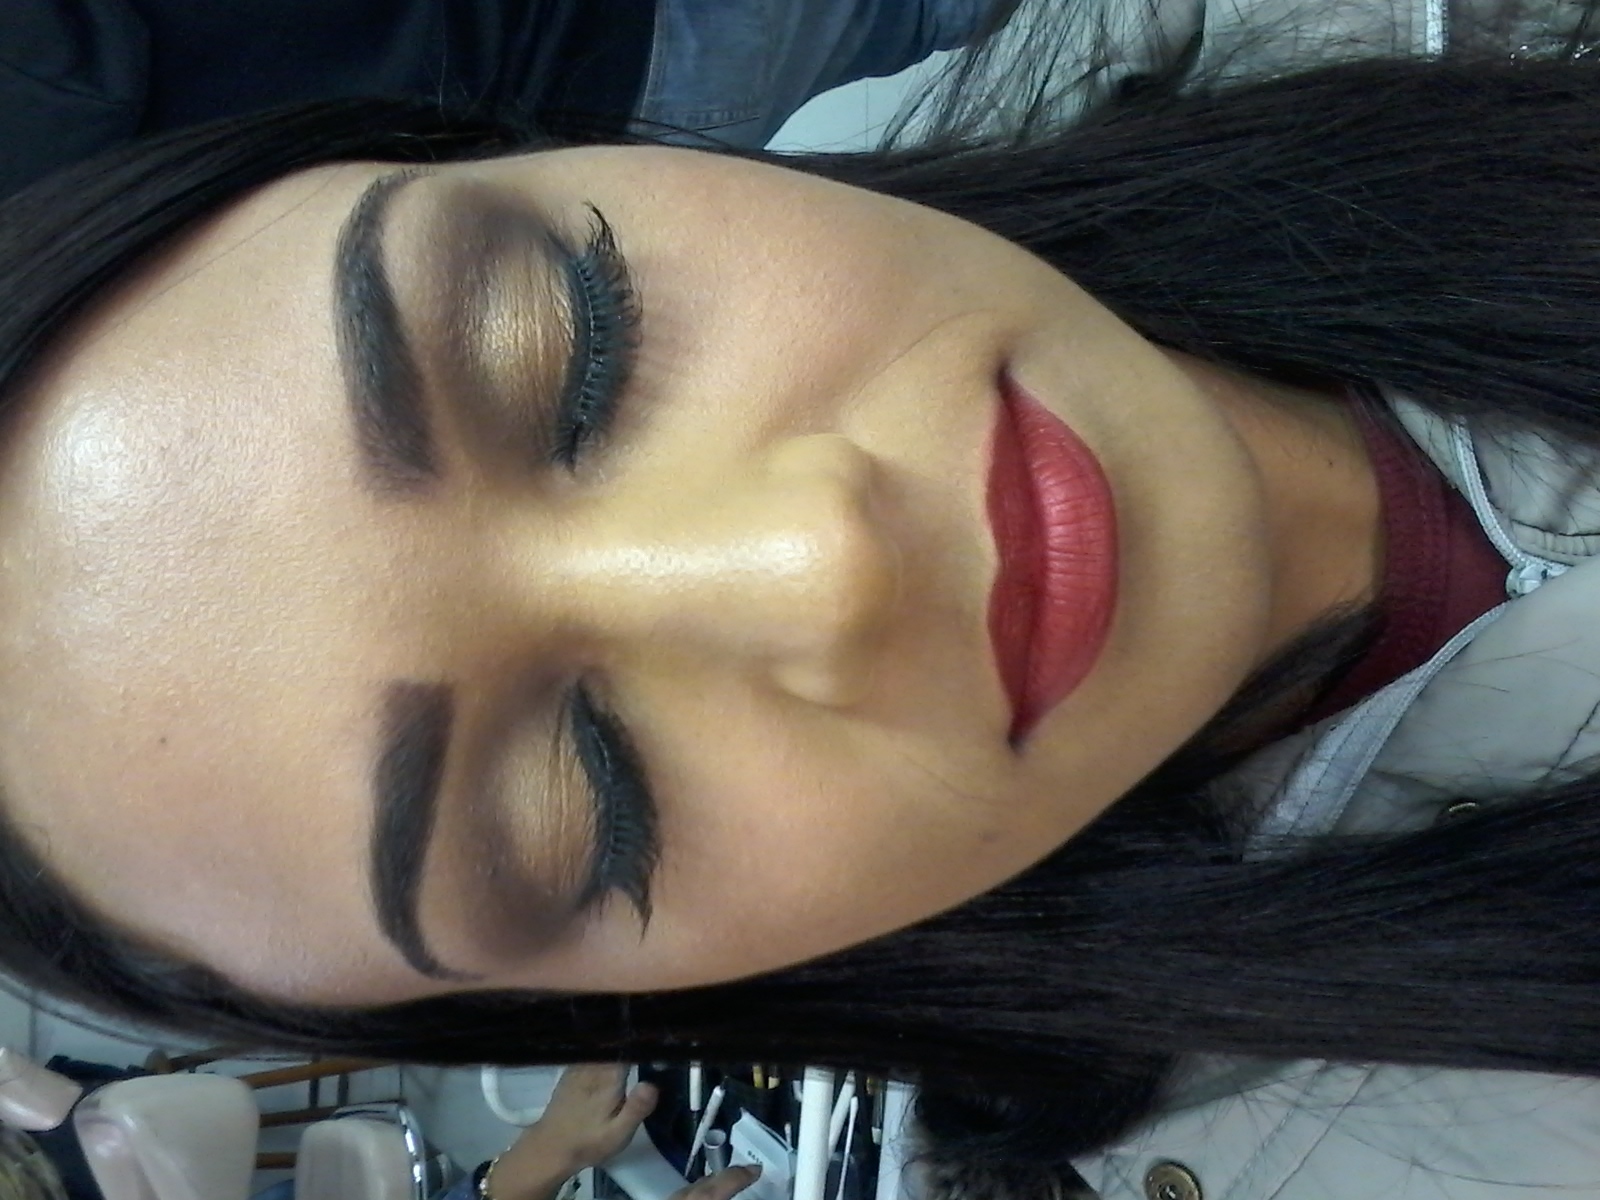 Make para noivas, centro de pálpebras iluminado e batom vermelho!  #makeup #makeparanoivas #batomvermelho maquiagem estudante (esteticista)